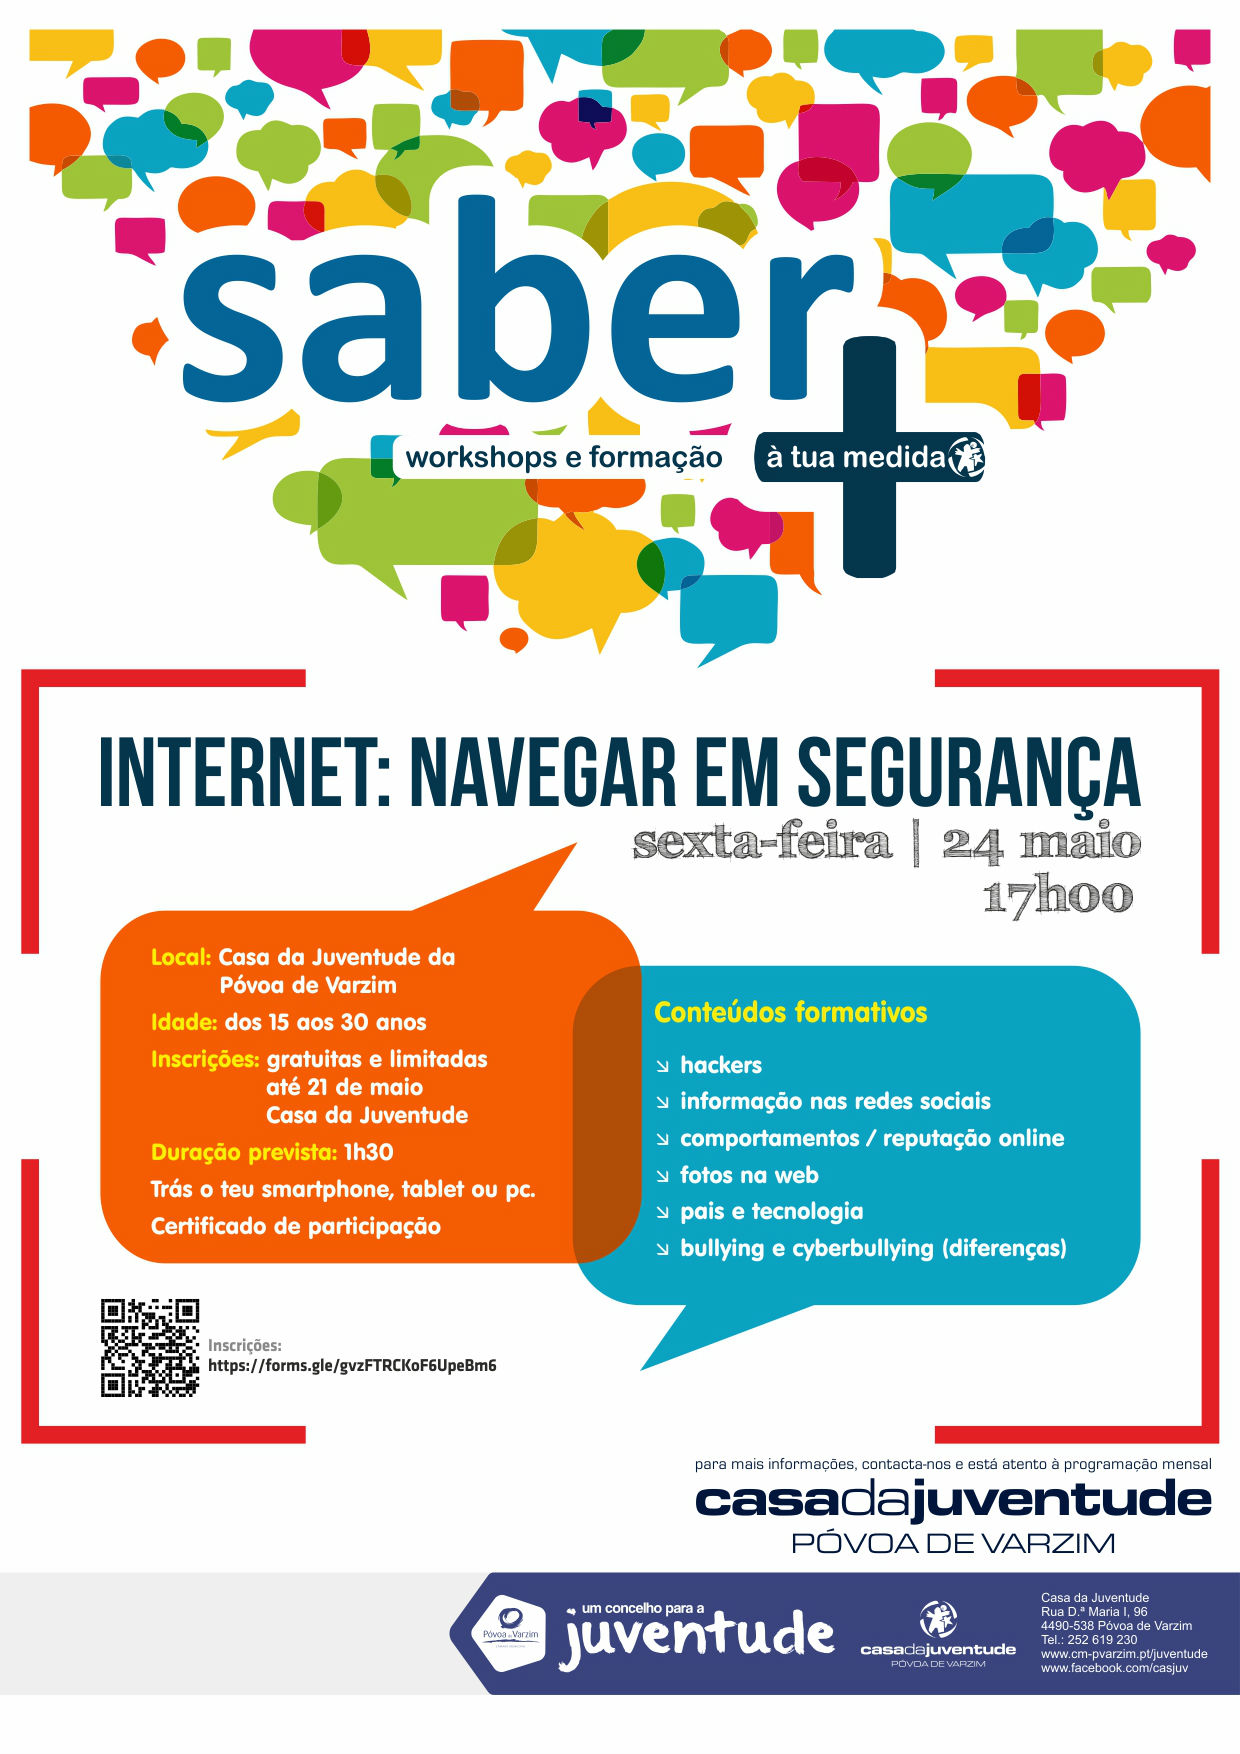 Ciclo Saber + "Internet: Navegar em Segurança"